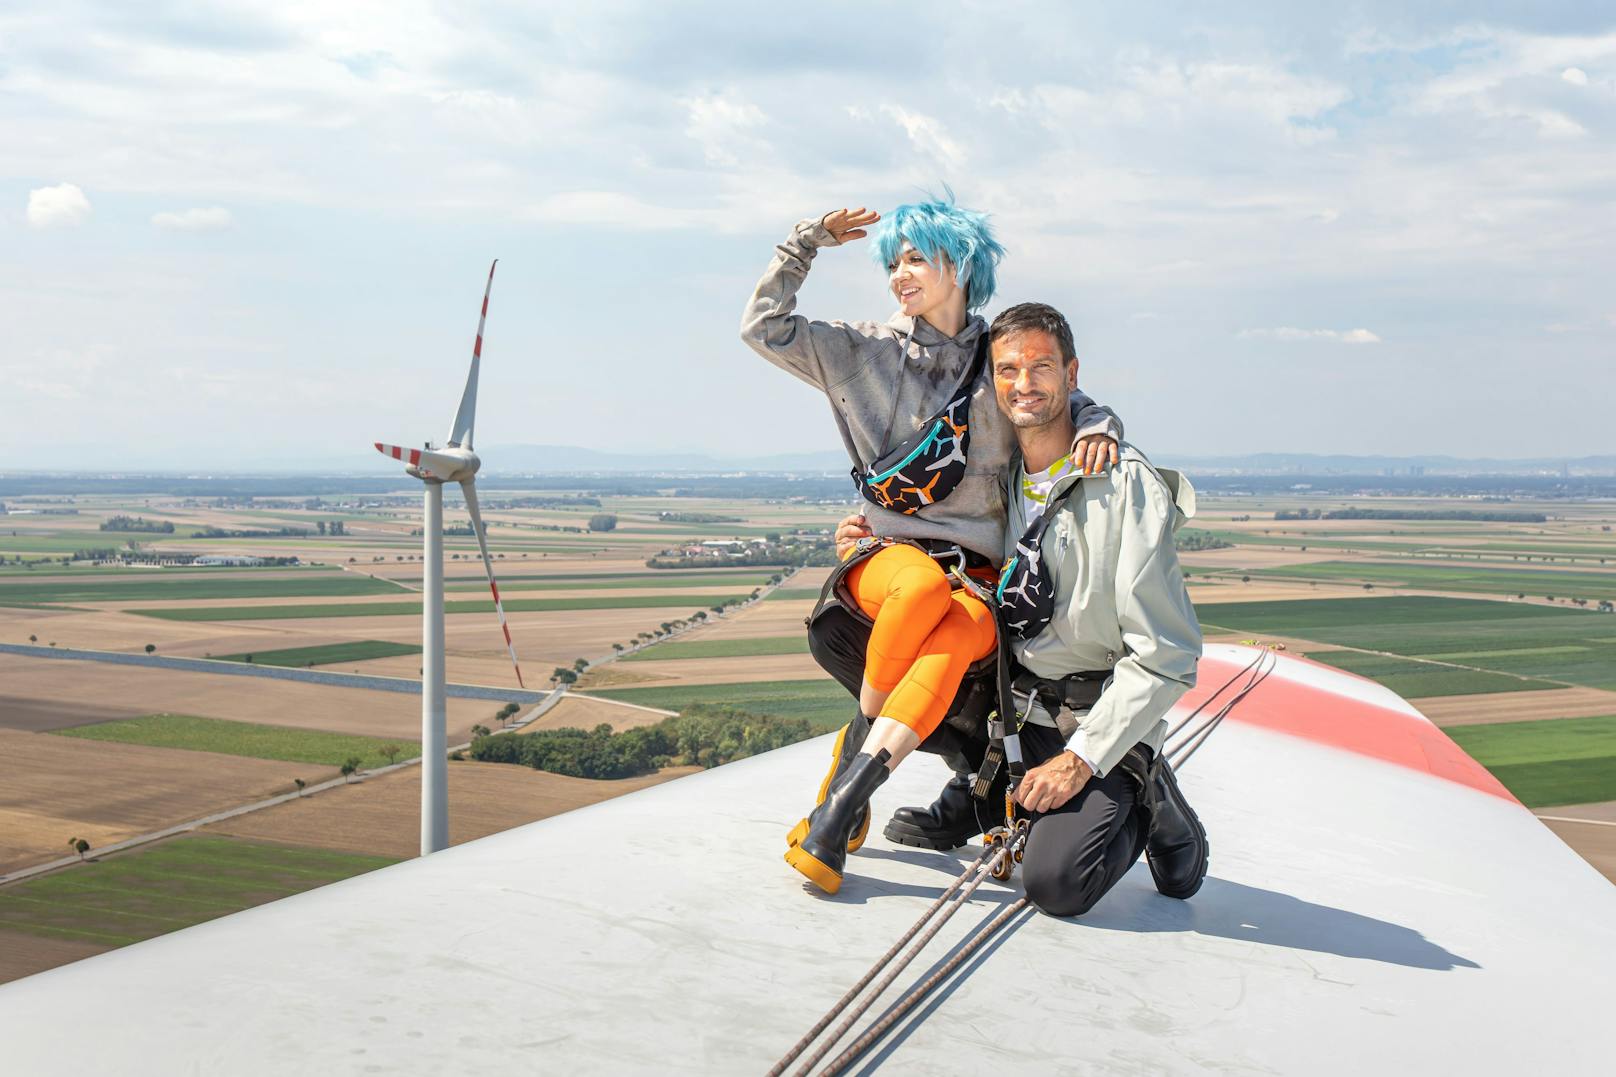 Windrad als Laufsteg für nachhaltige Mode aus Österreich